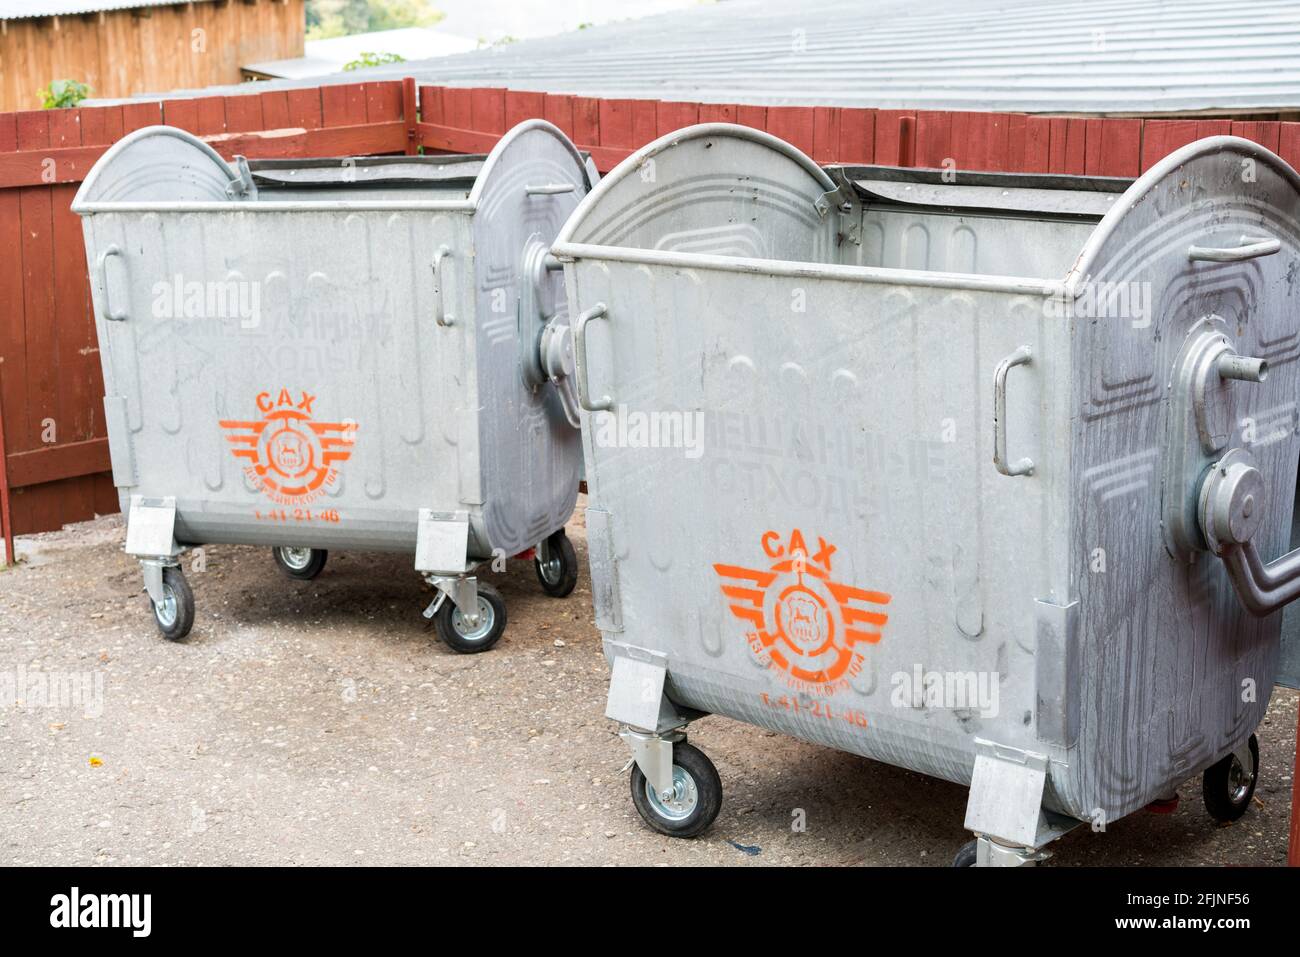 Reciclaje y contenedores de basura en restaurantes - TRAZA